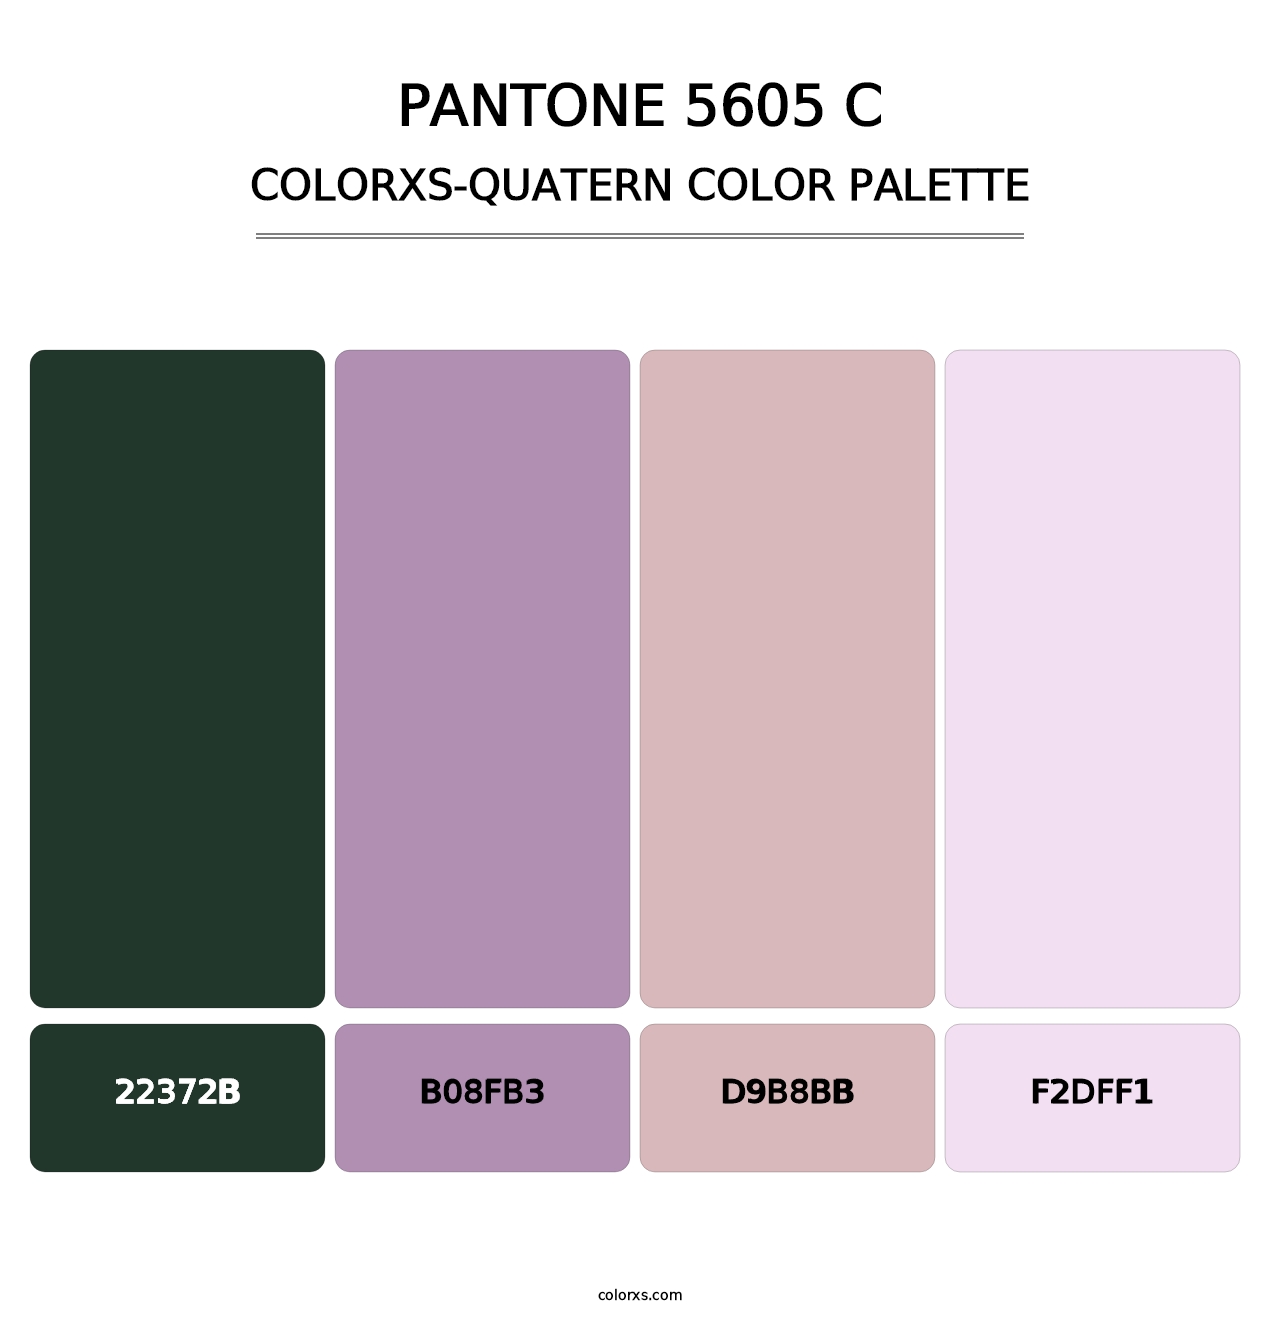 PANTONE 5605 C - Colorxs Quatern Palette